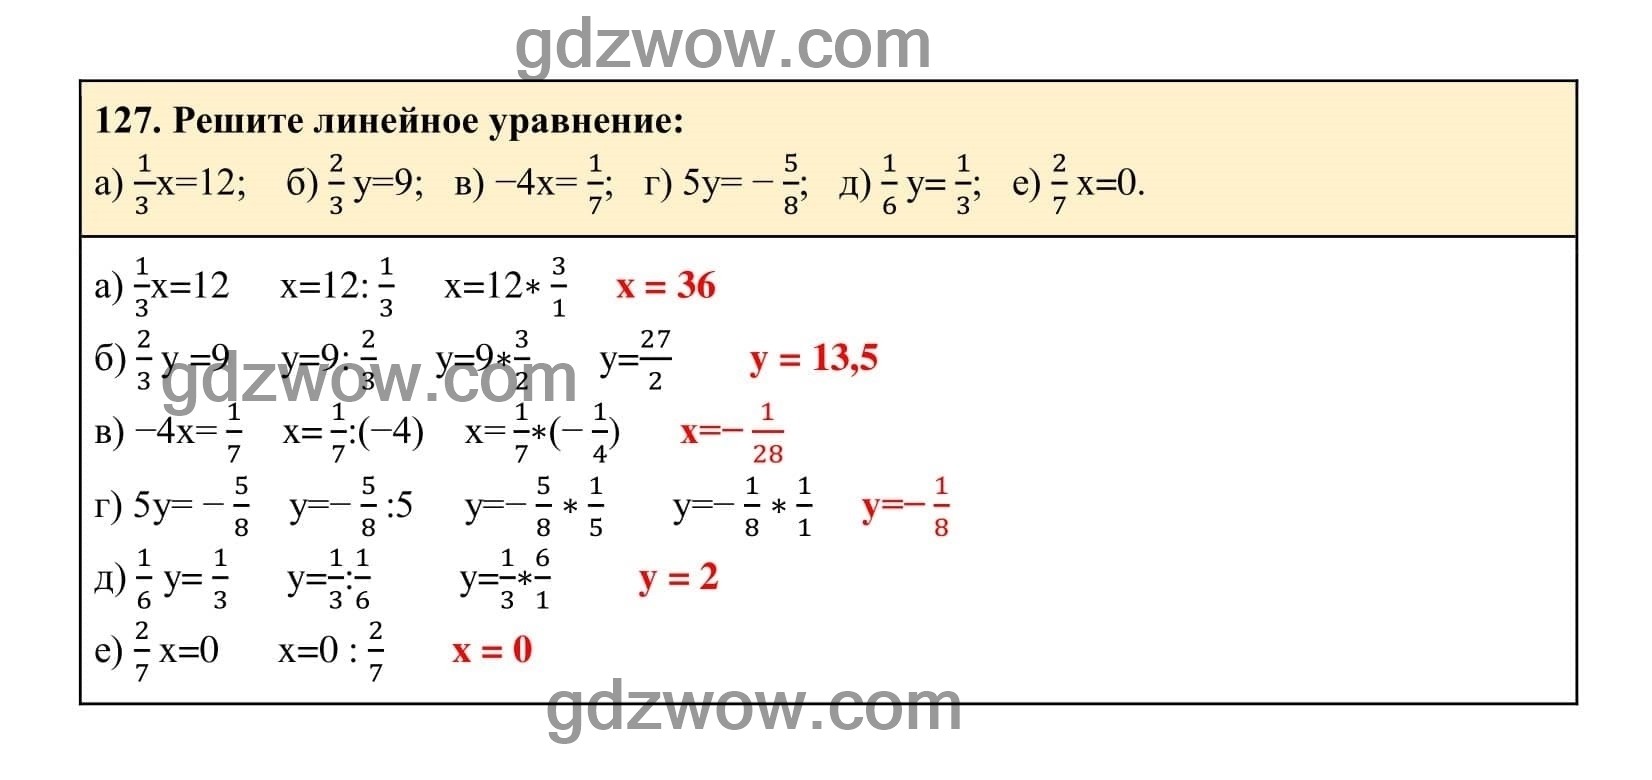 Упражнение 127 - ГДЗ по Алгебре 7 класс Учебник Макарычев (решебник) - GDZwow